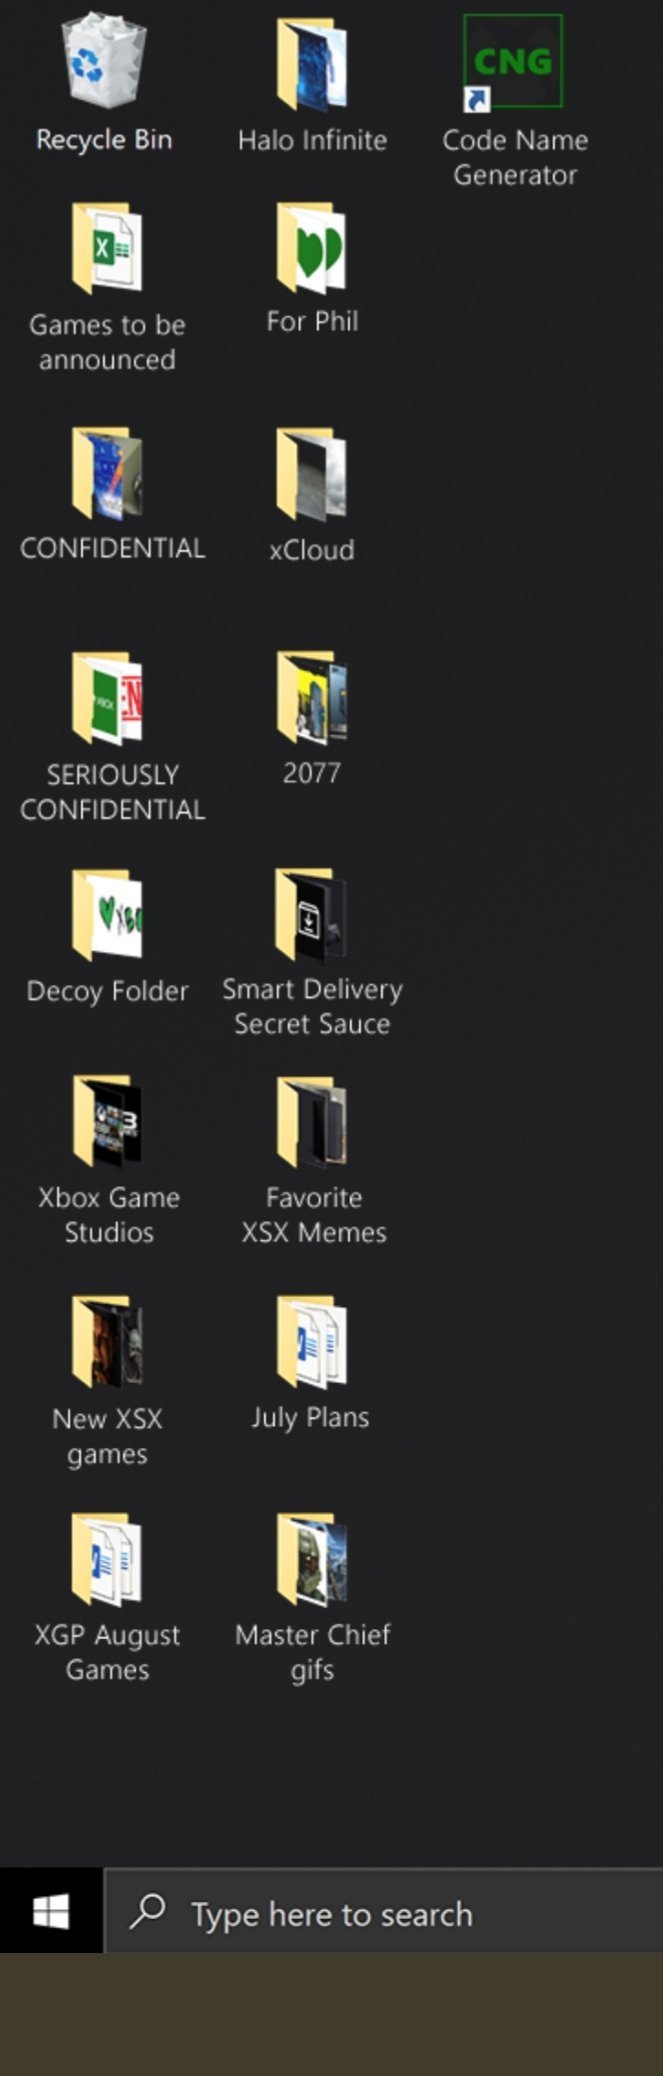 微软推出免费Win10的Xbox Series X主题 很多彩蛋()